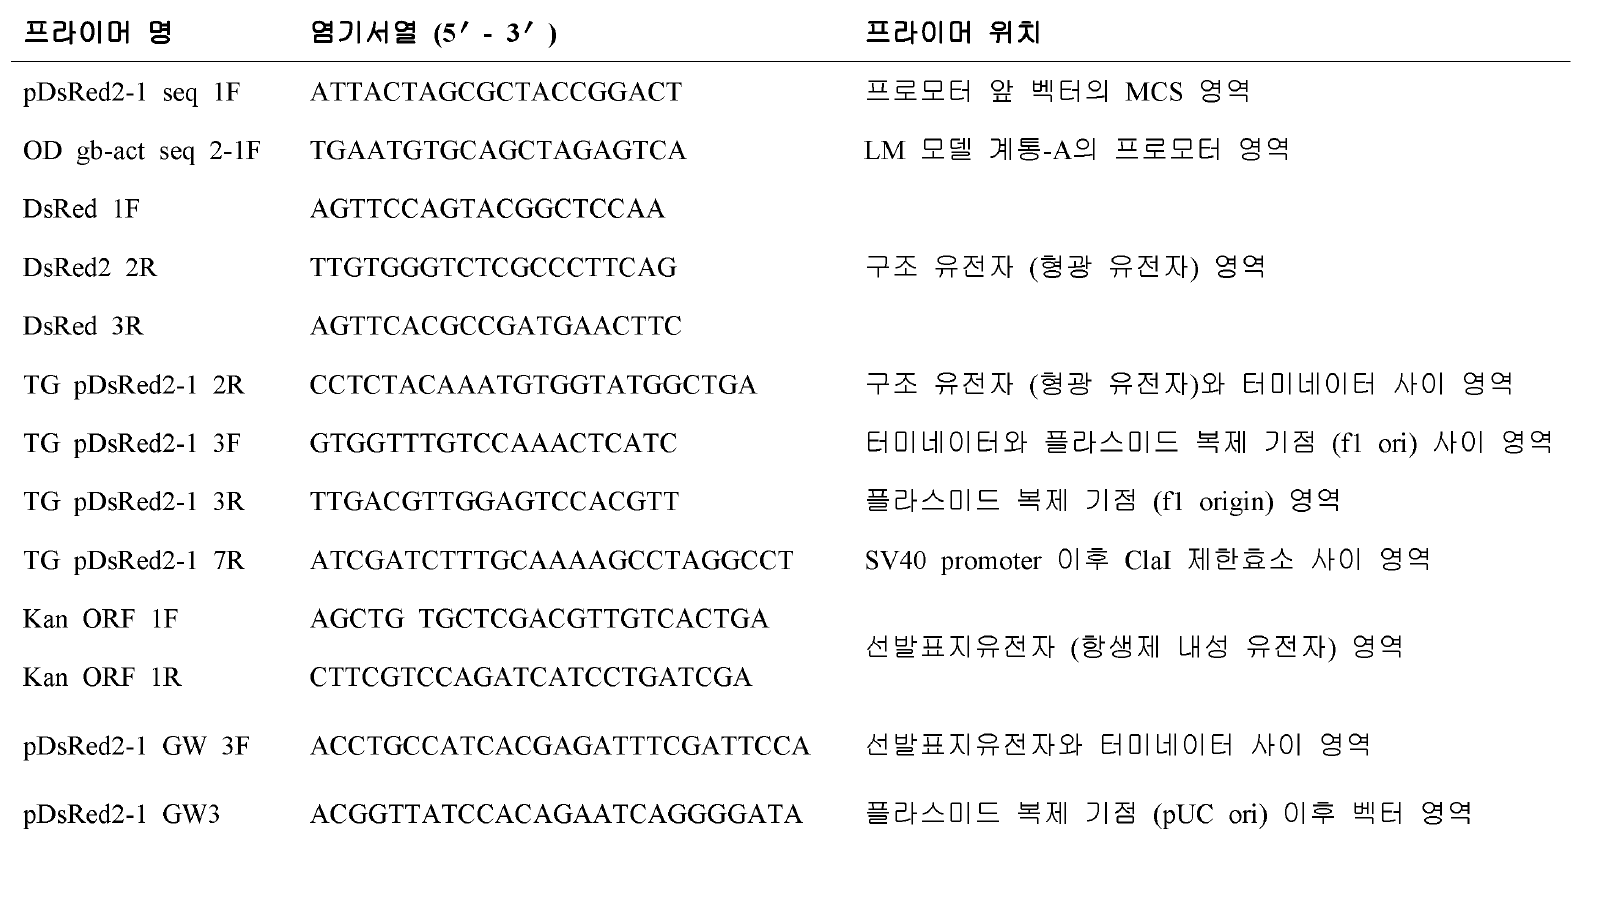 LM 모델 계통-A 와 M 의 도입 유전자 위치 분석을 위해 사용된 PCR primer 정보